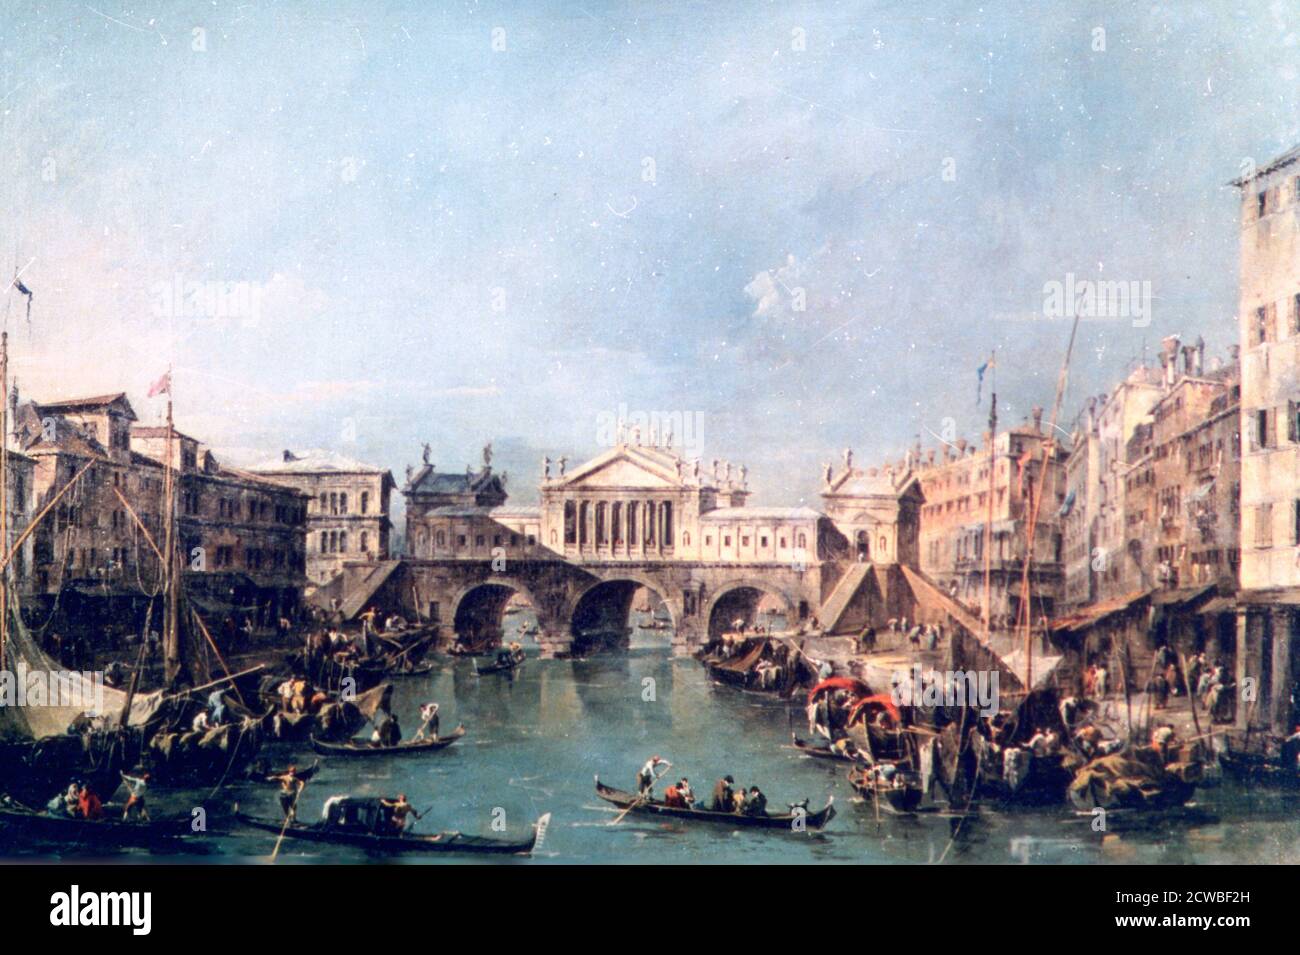 Venezia', c1775 artista: Francesco Guardi. Francesco Guardi (1712-1793) è stato un pittore italiano, nobile e membro della Scuola Veneziana. Foto Stock